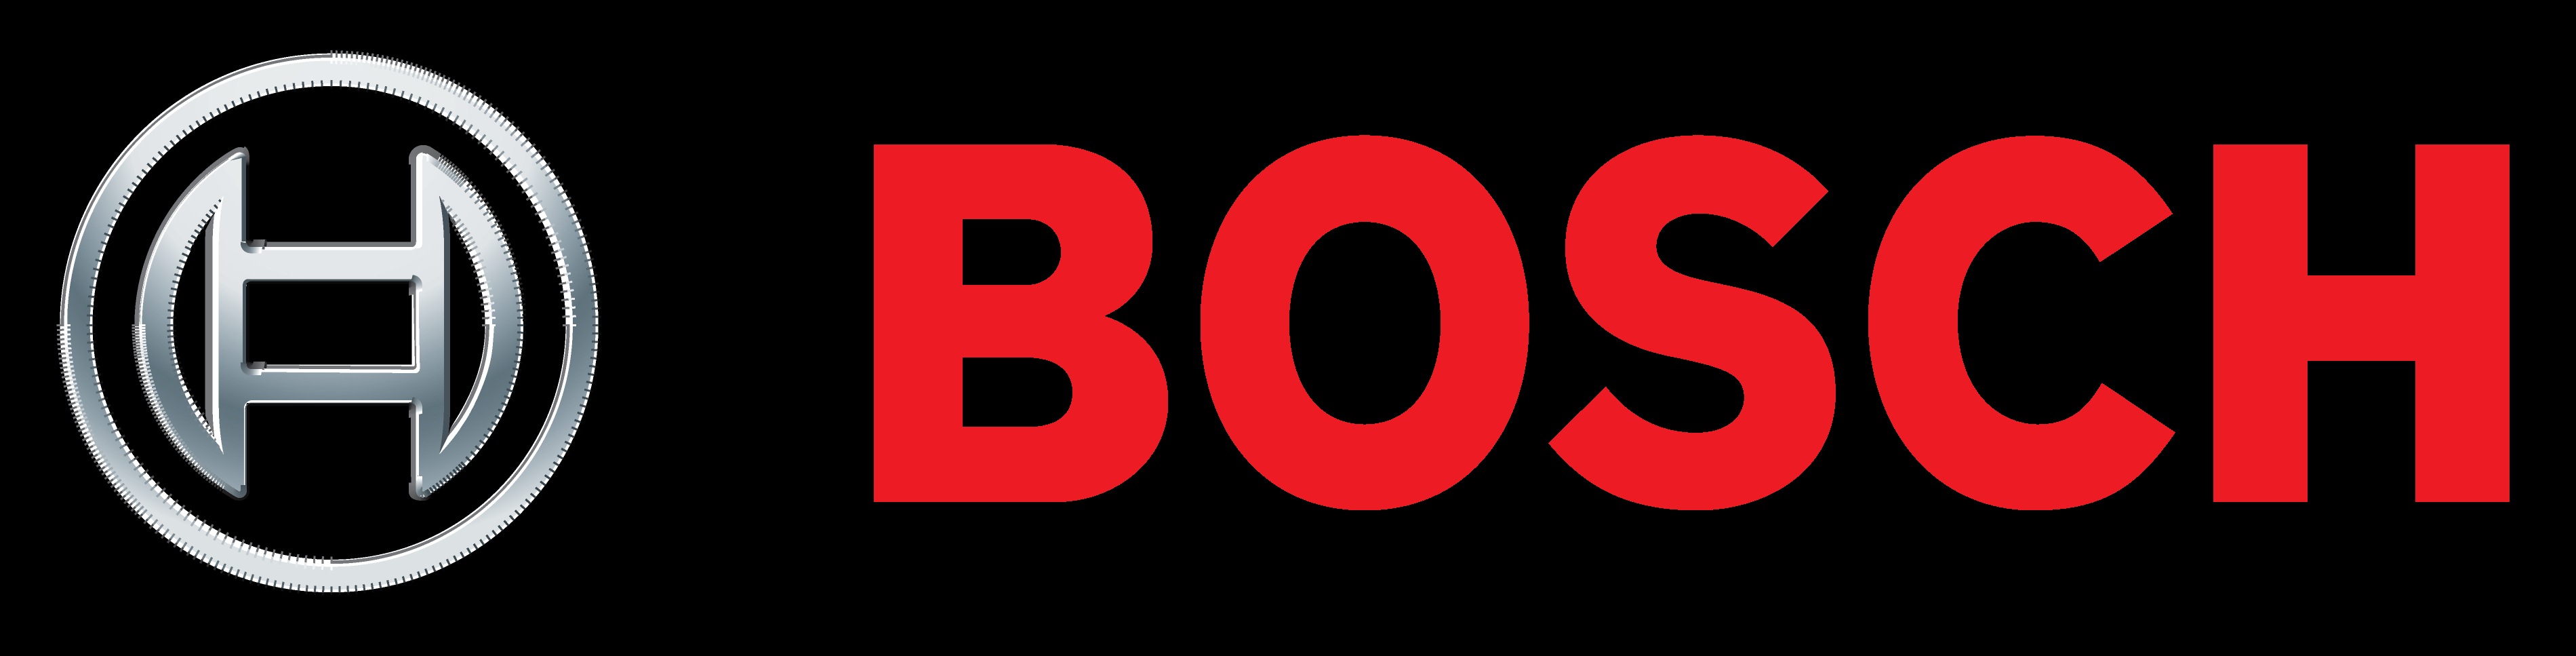 Bosch symbol Wallpaper